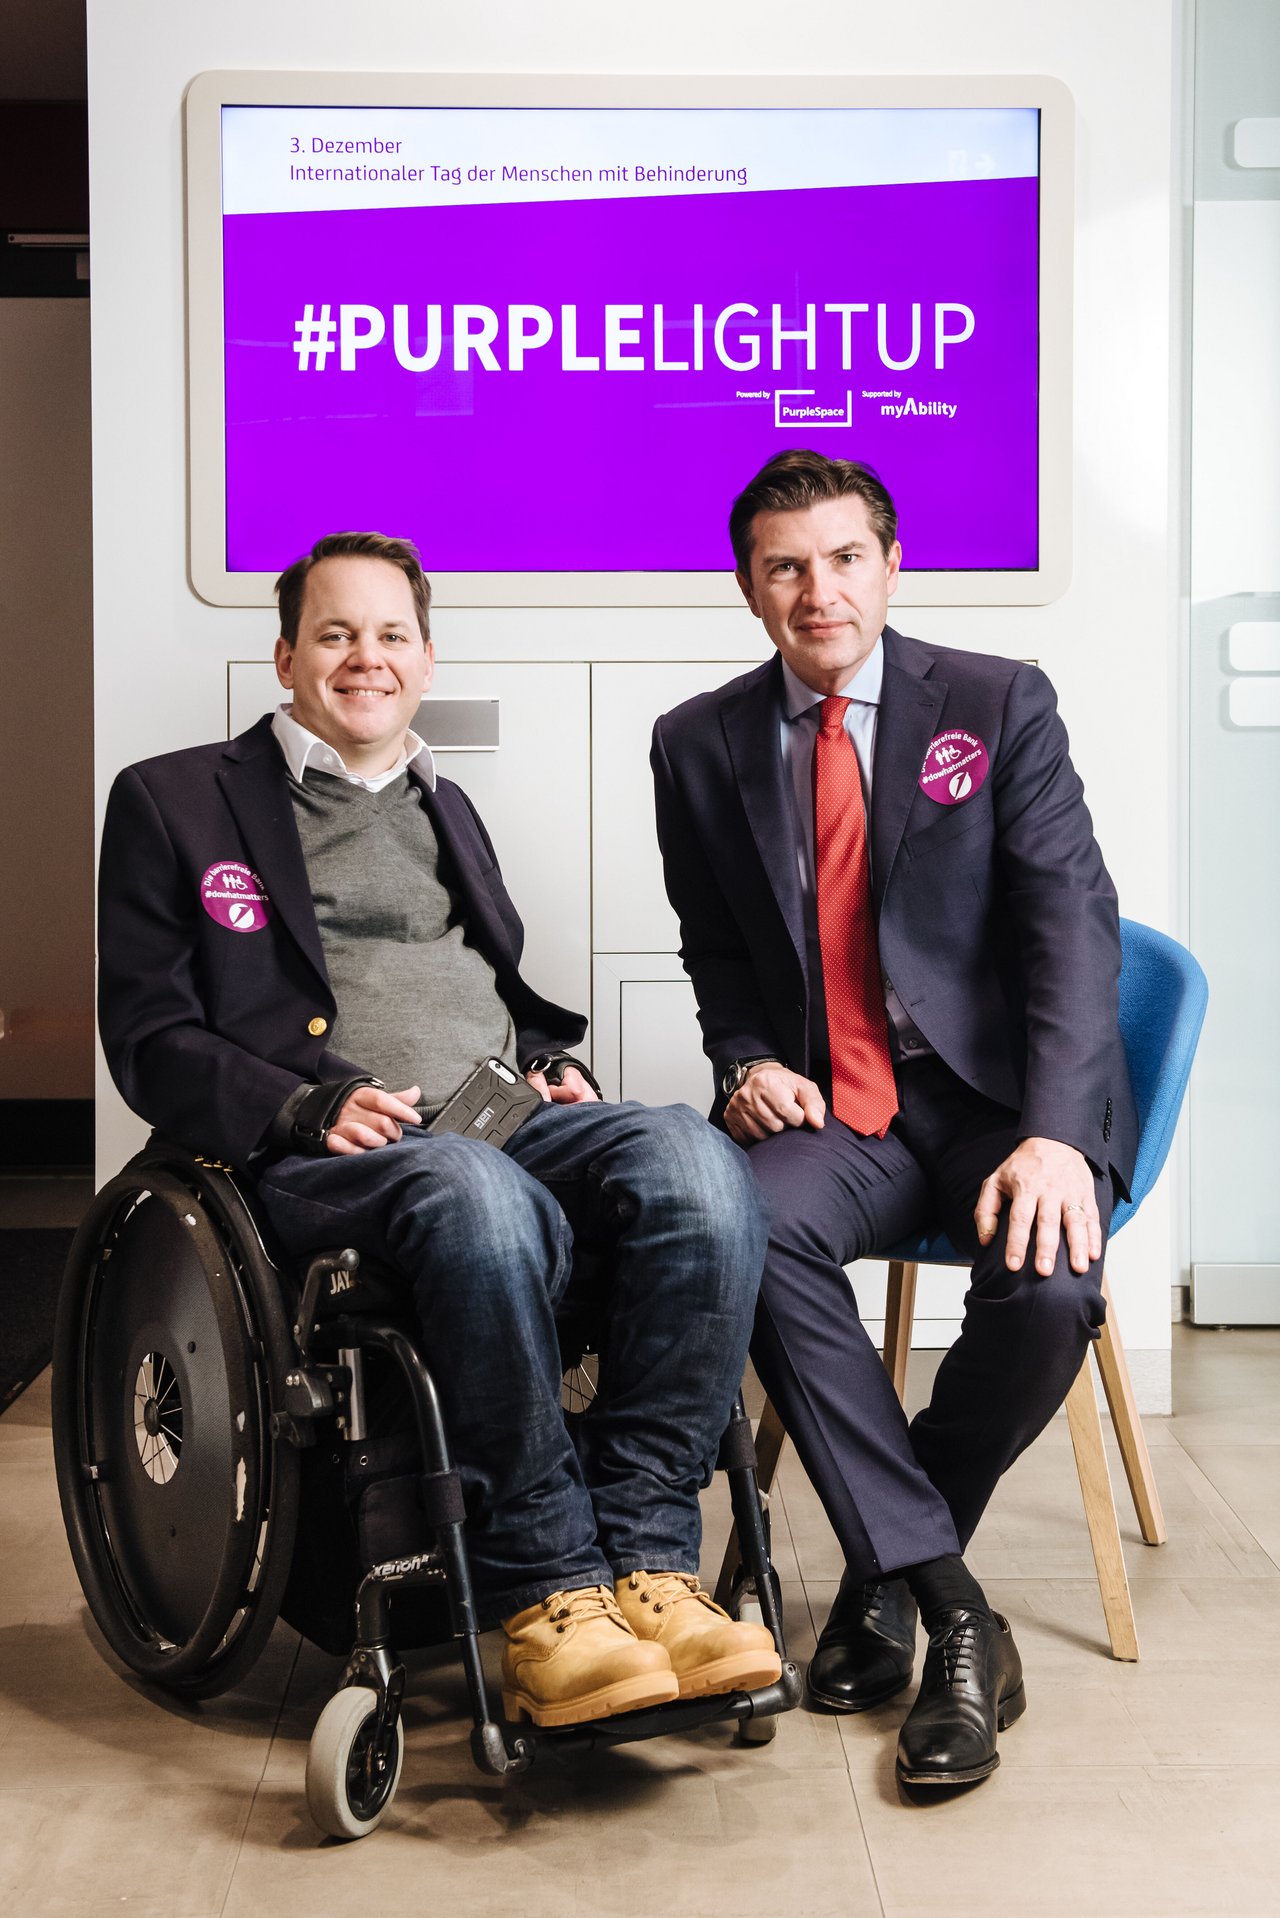 Gregor Demblin und Robert Zadrazil, Bank Austria Filiale. Im Hintergrund lila Bildschirm mit "PurpleLightUp"